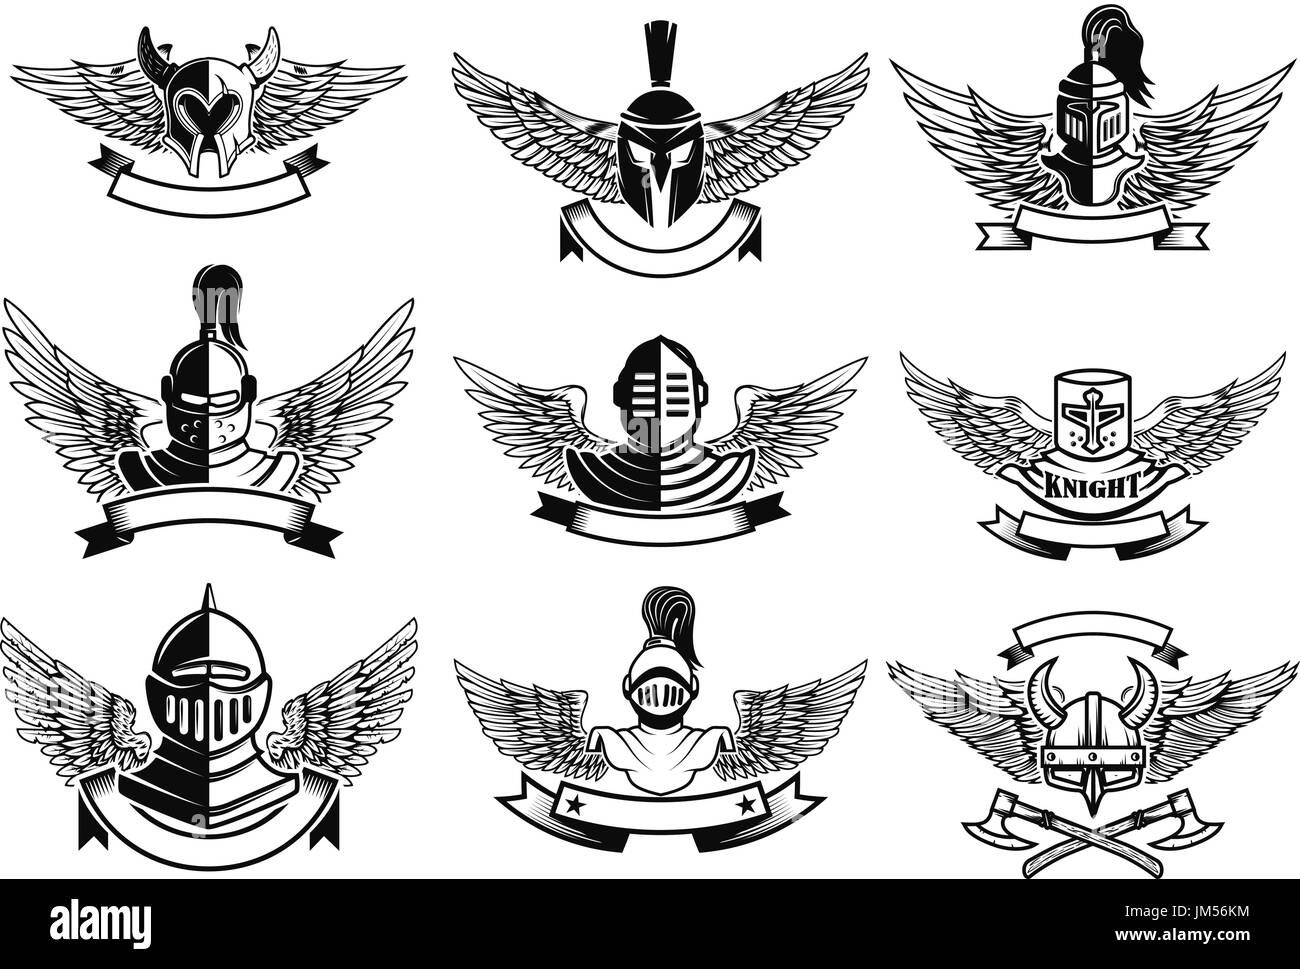 Satz von Embleme mit Helmen und Flügel. Design-Elemente für Emblem, Label, Marke, Zeichen. Vektor-illustration Stock Vektor